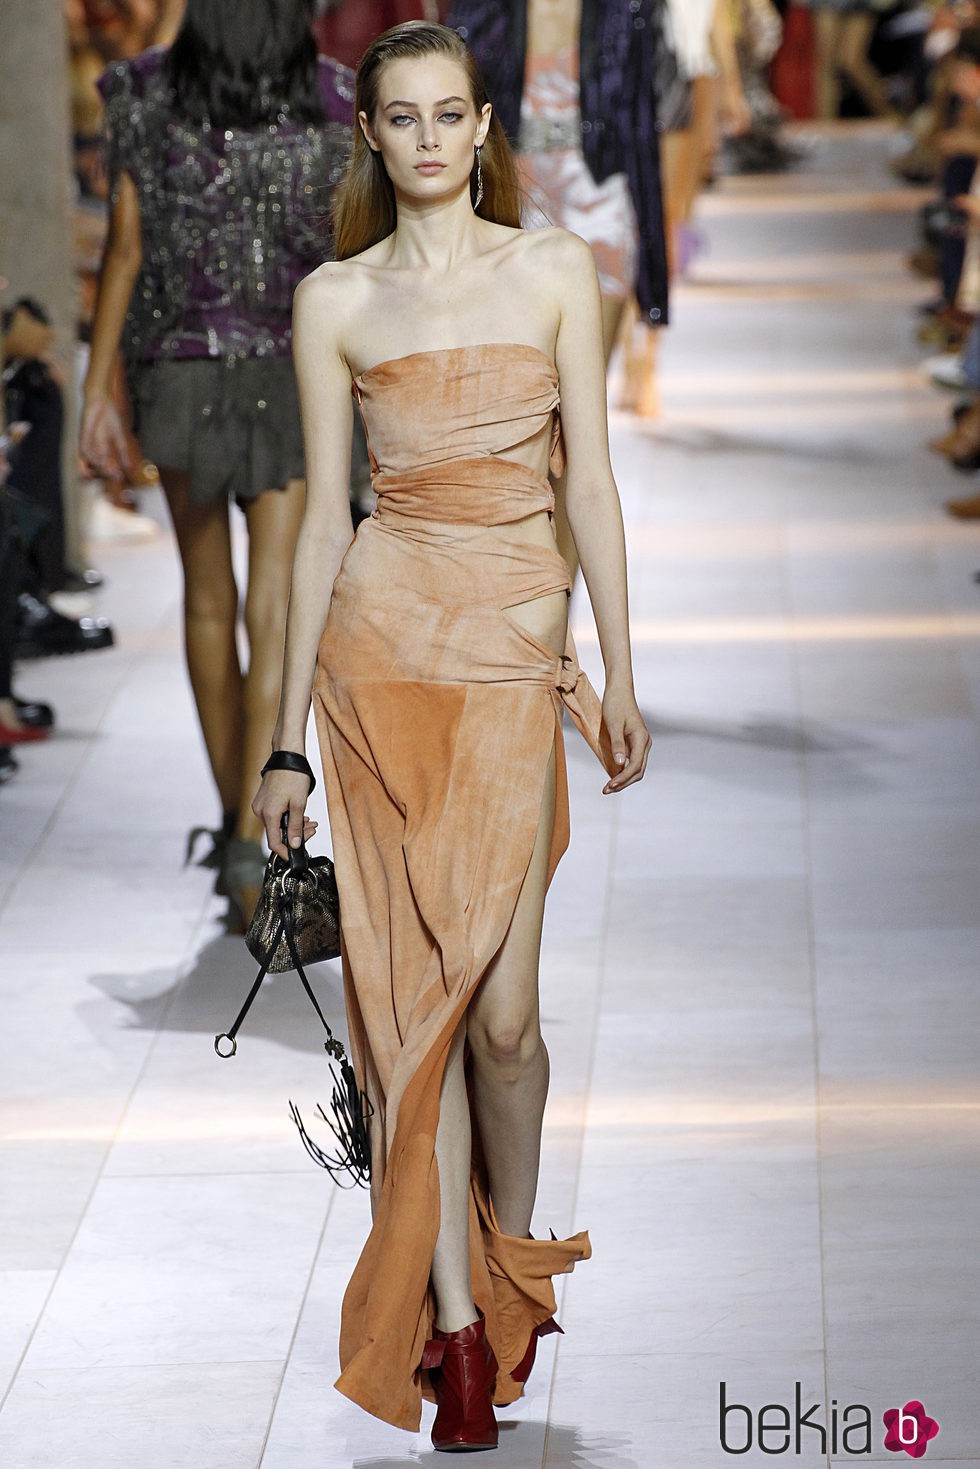 Vestido anaranjado de la colección primavera/verano 2016 de Roberto Cavalli en Milan Fashion Week